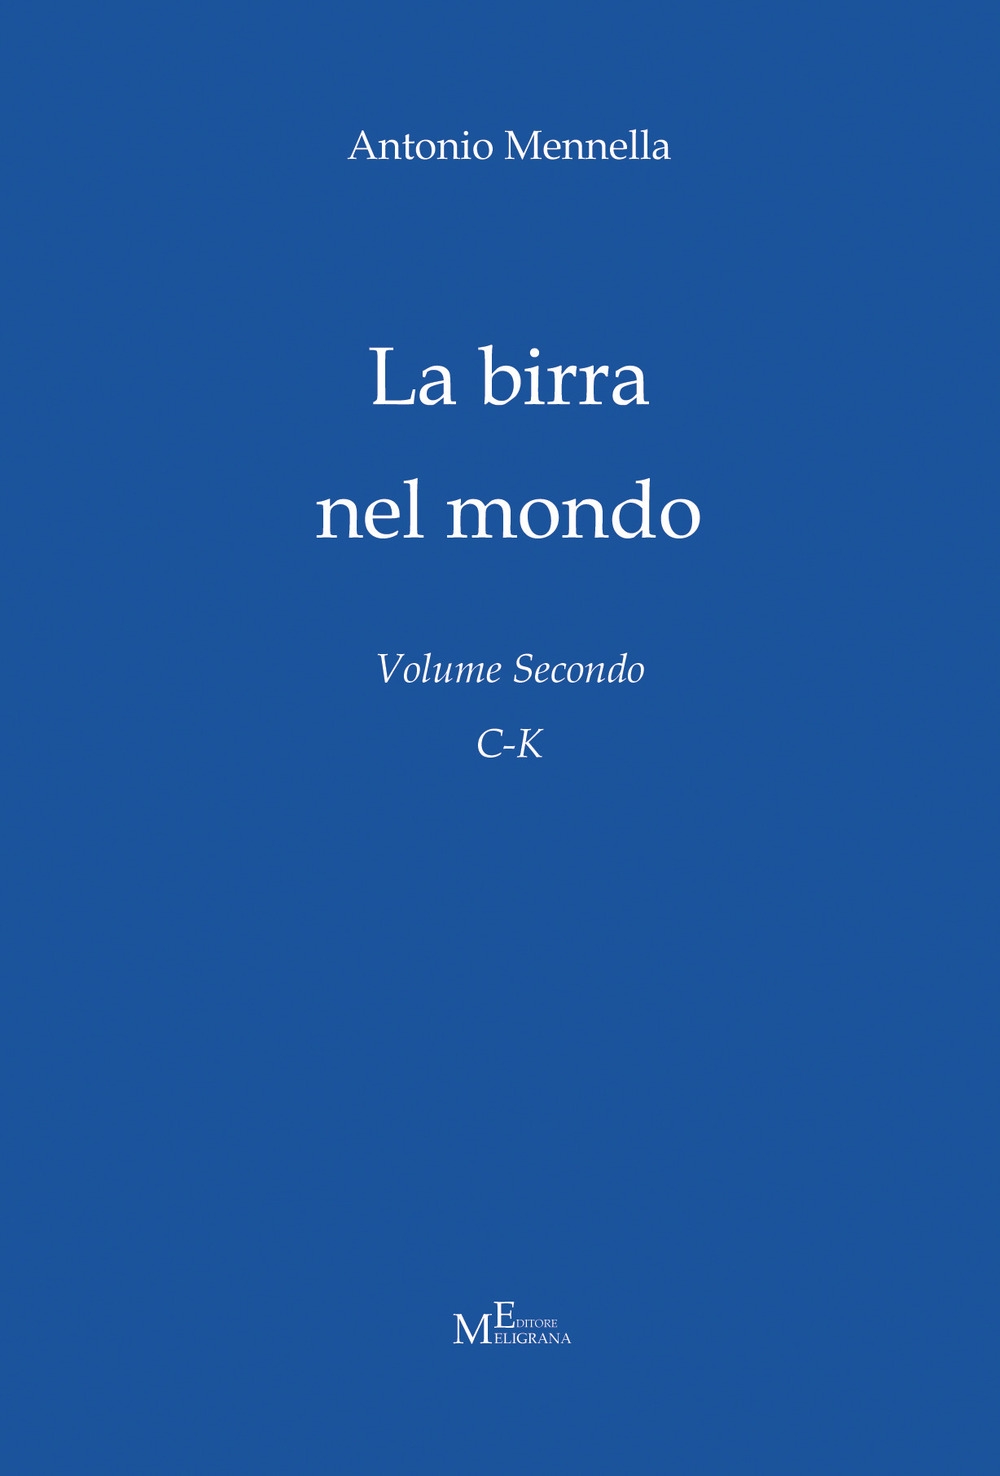 Libri Antonio Mennella - La Birra Nel Mondo. Vol. 2: C-K NUOVO SIGILLATO, EDIZIONE DEL 05/05/2018 SUBITO DISPONIBILE